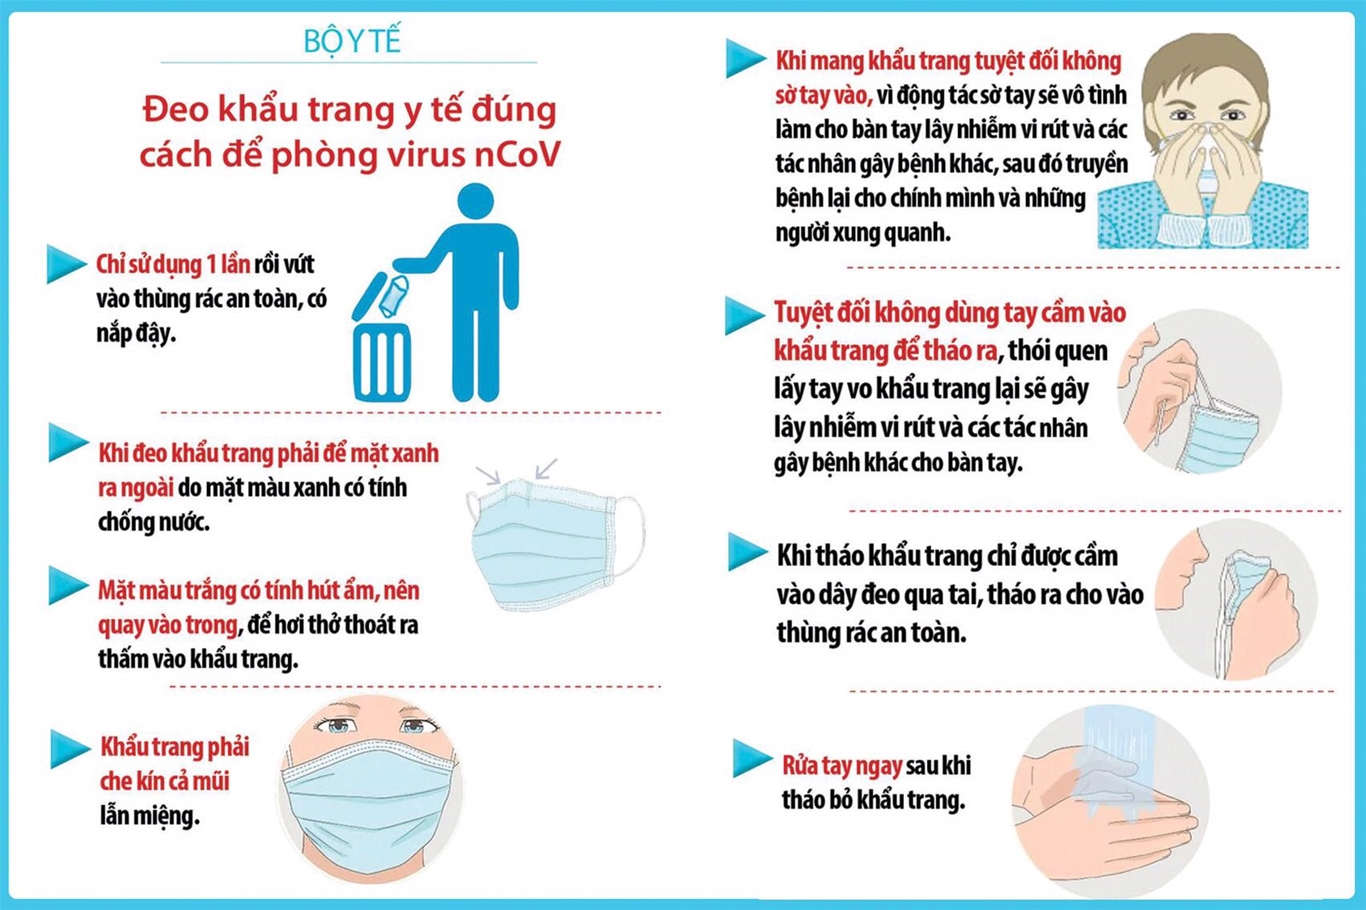 Việt Nam chủ động phòng, chống dịch bệnh Covid-19